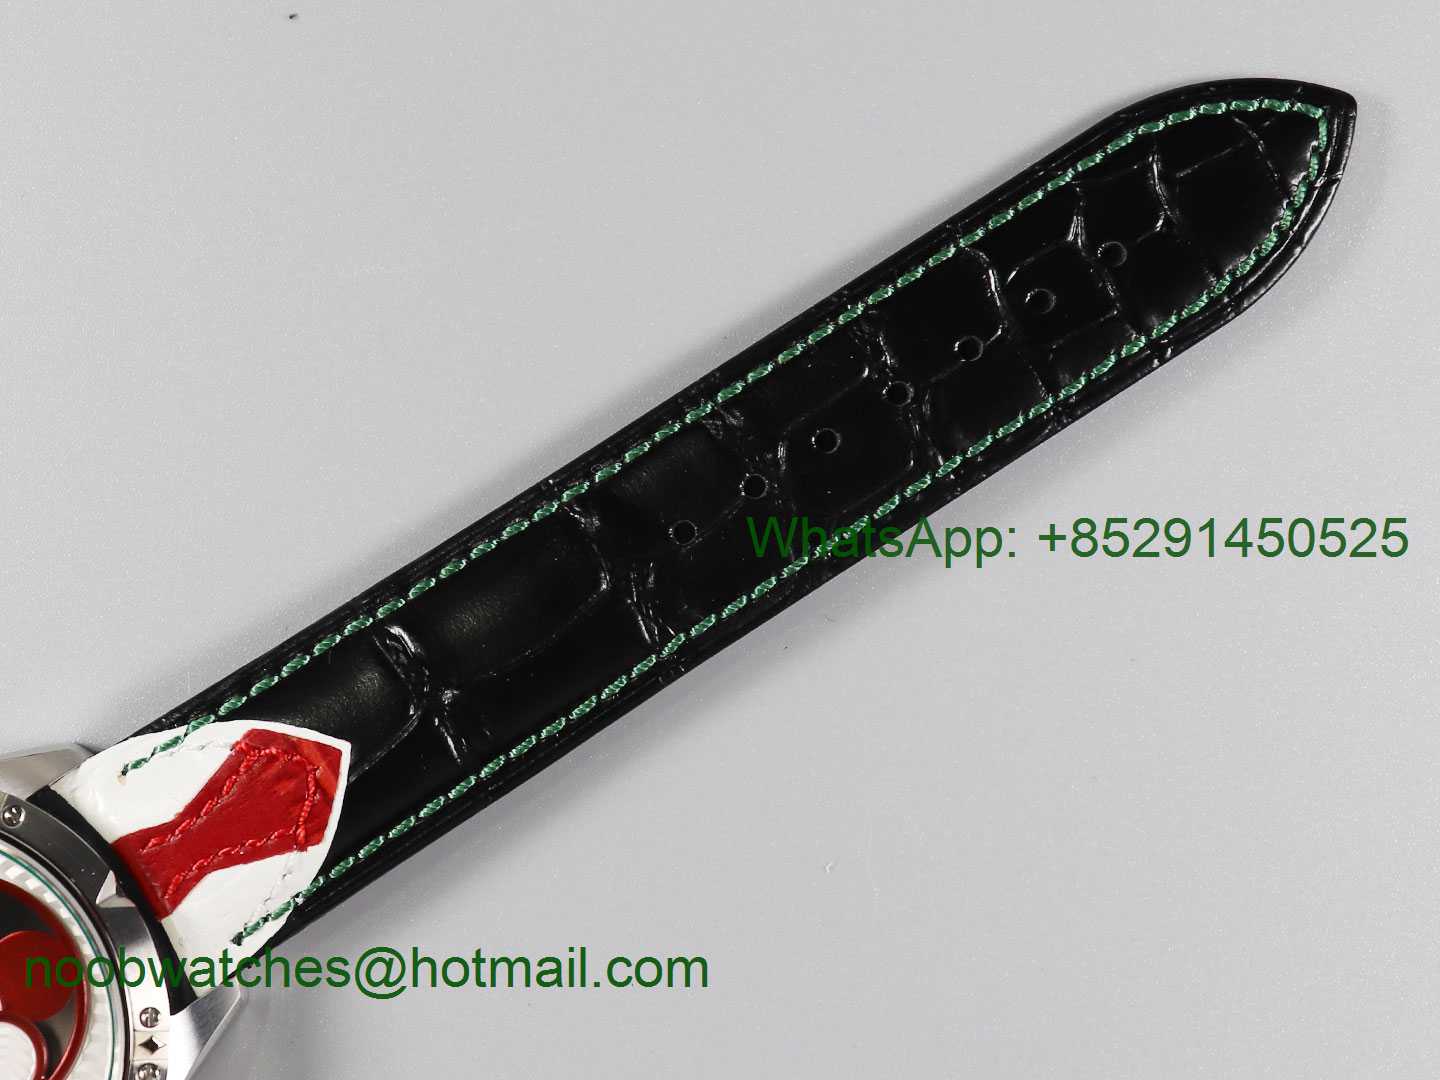 Replica Konstantin Chaykin Joker SS Joker Dial TWF Green Inner Bezel on Green Leather Strap NH35A